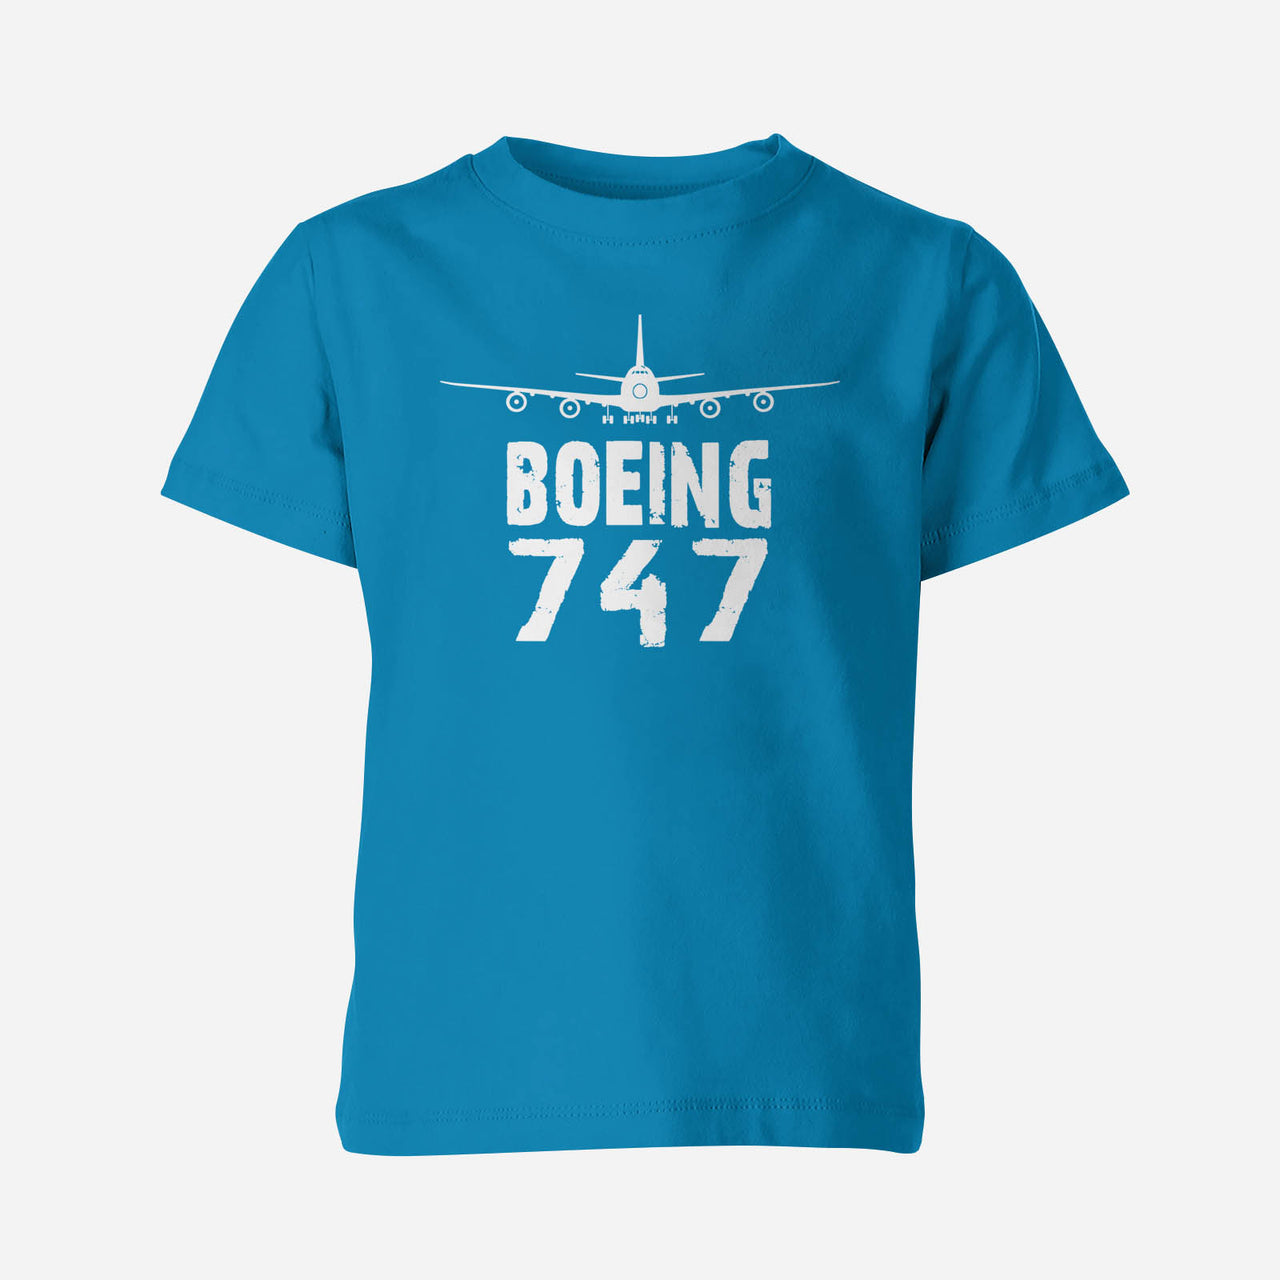 Boeing 747 & Plane Designed Children T-Shirts